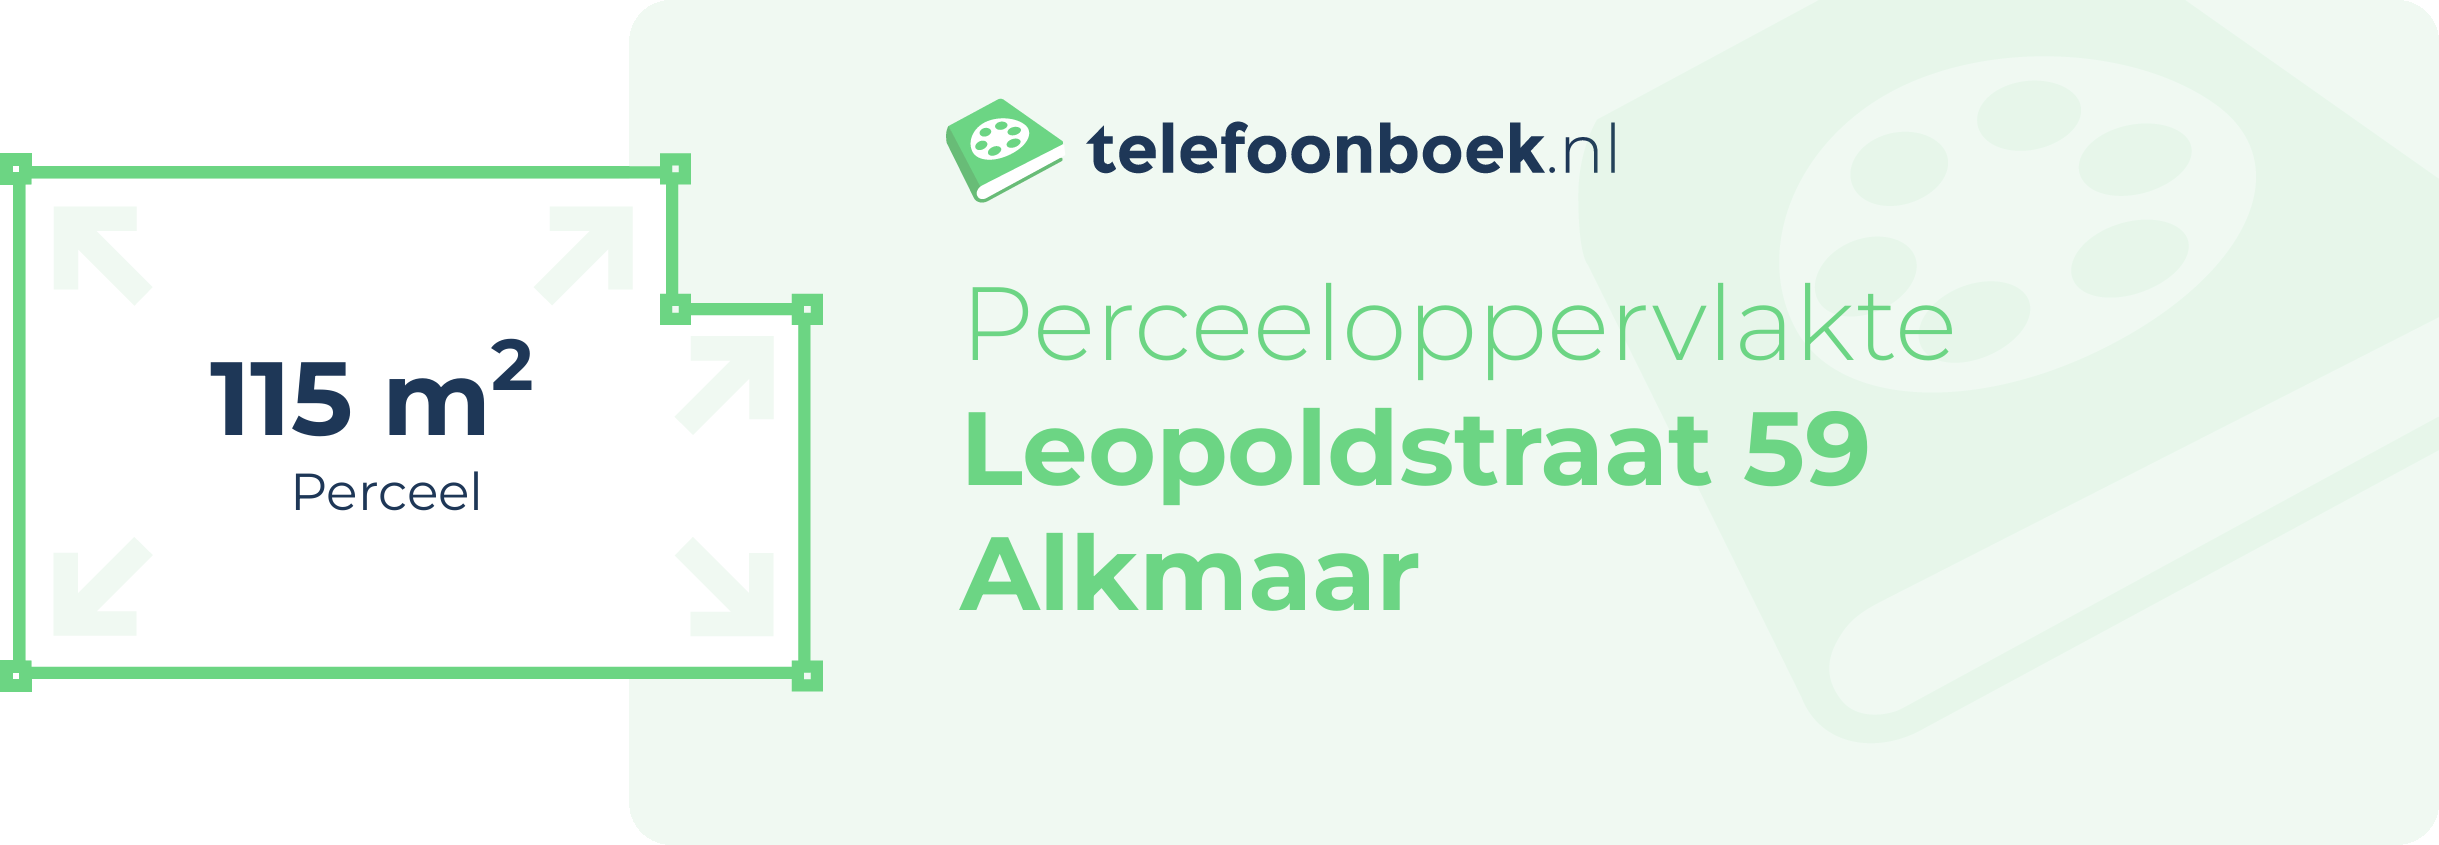 Perceeloppervlakte Leopoldstraat 59 Alkmaar